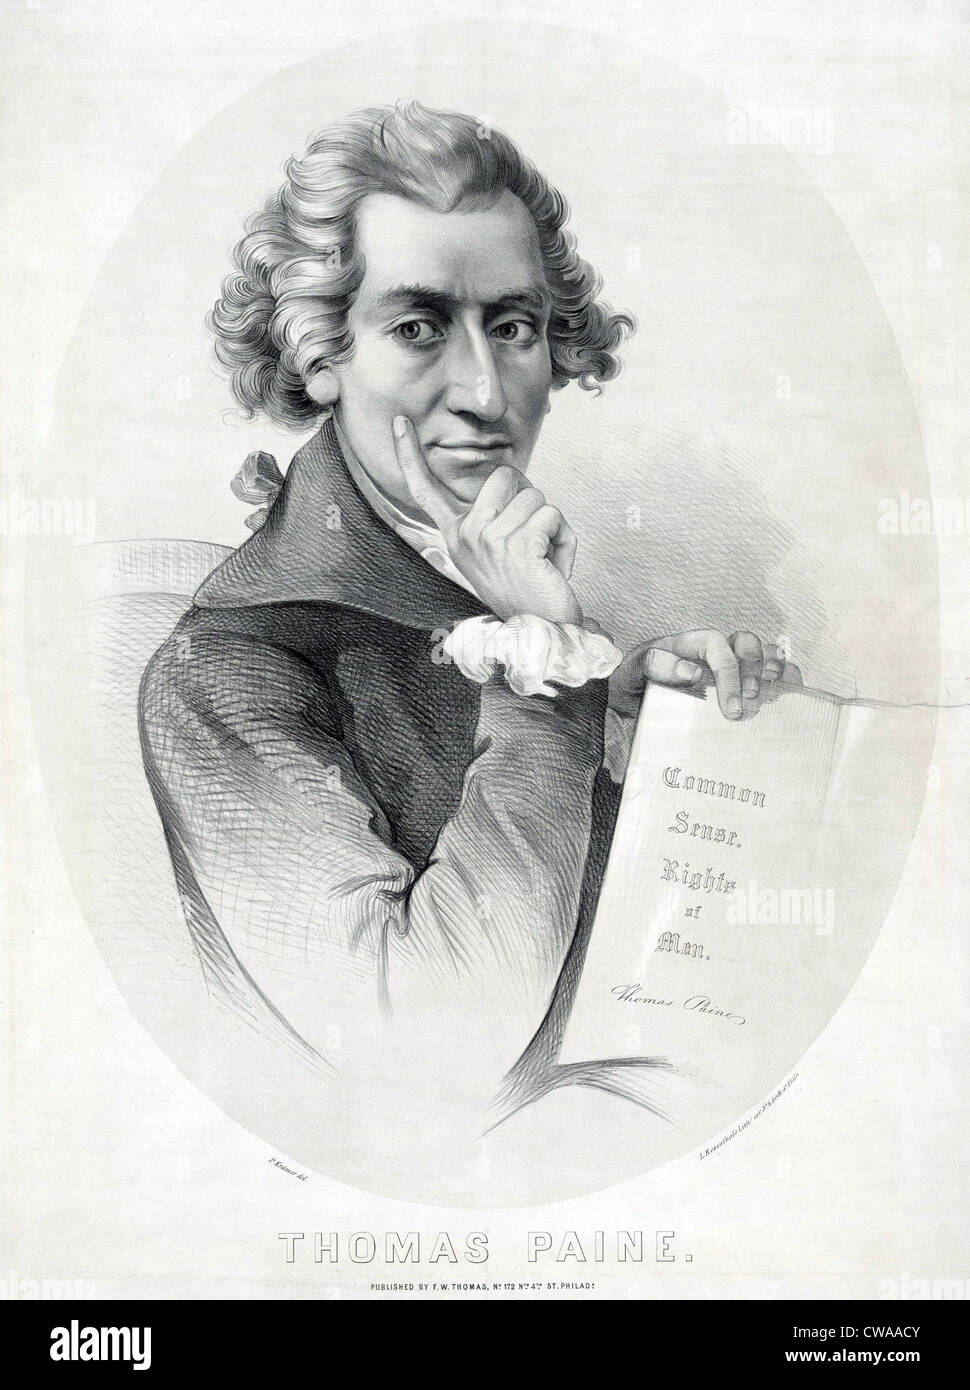 Thomas Paine (1737-1809) anglais qui préconisaient l'Indépendance américaine radicale dans sa brochure, "bon sens". Banque D'Images